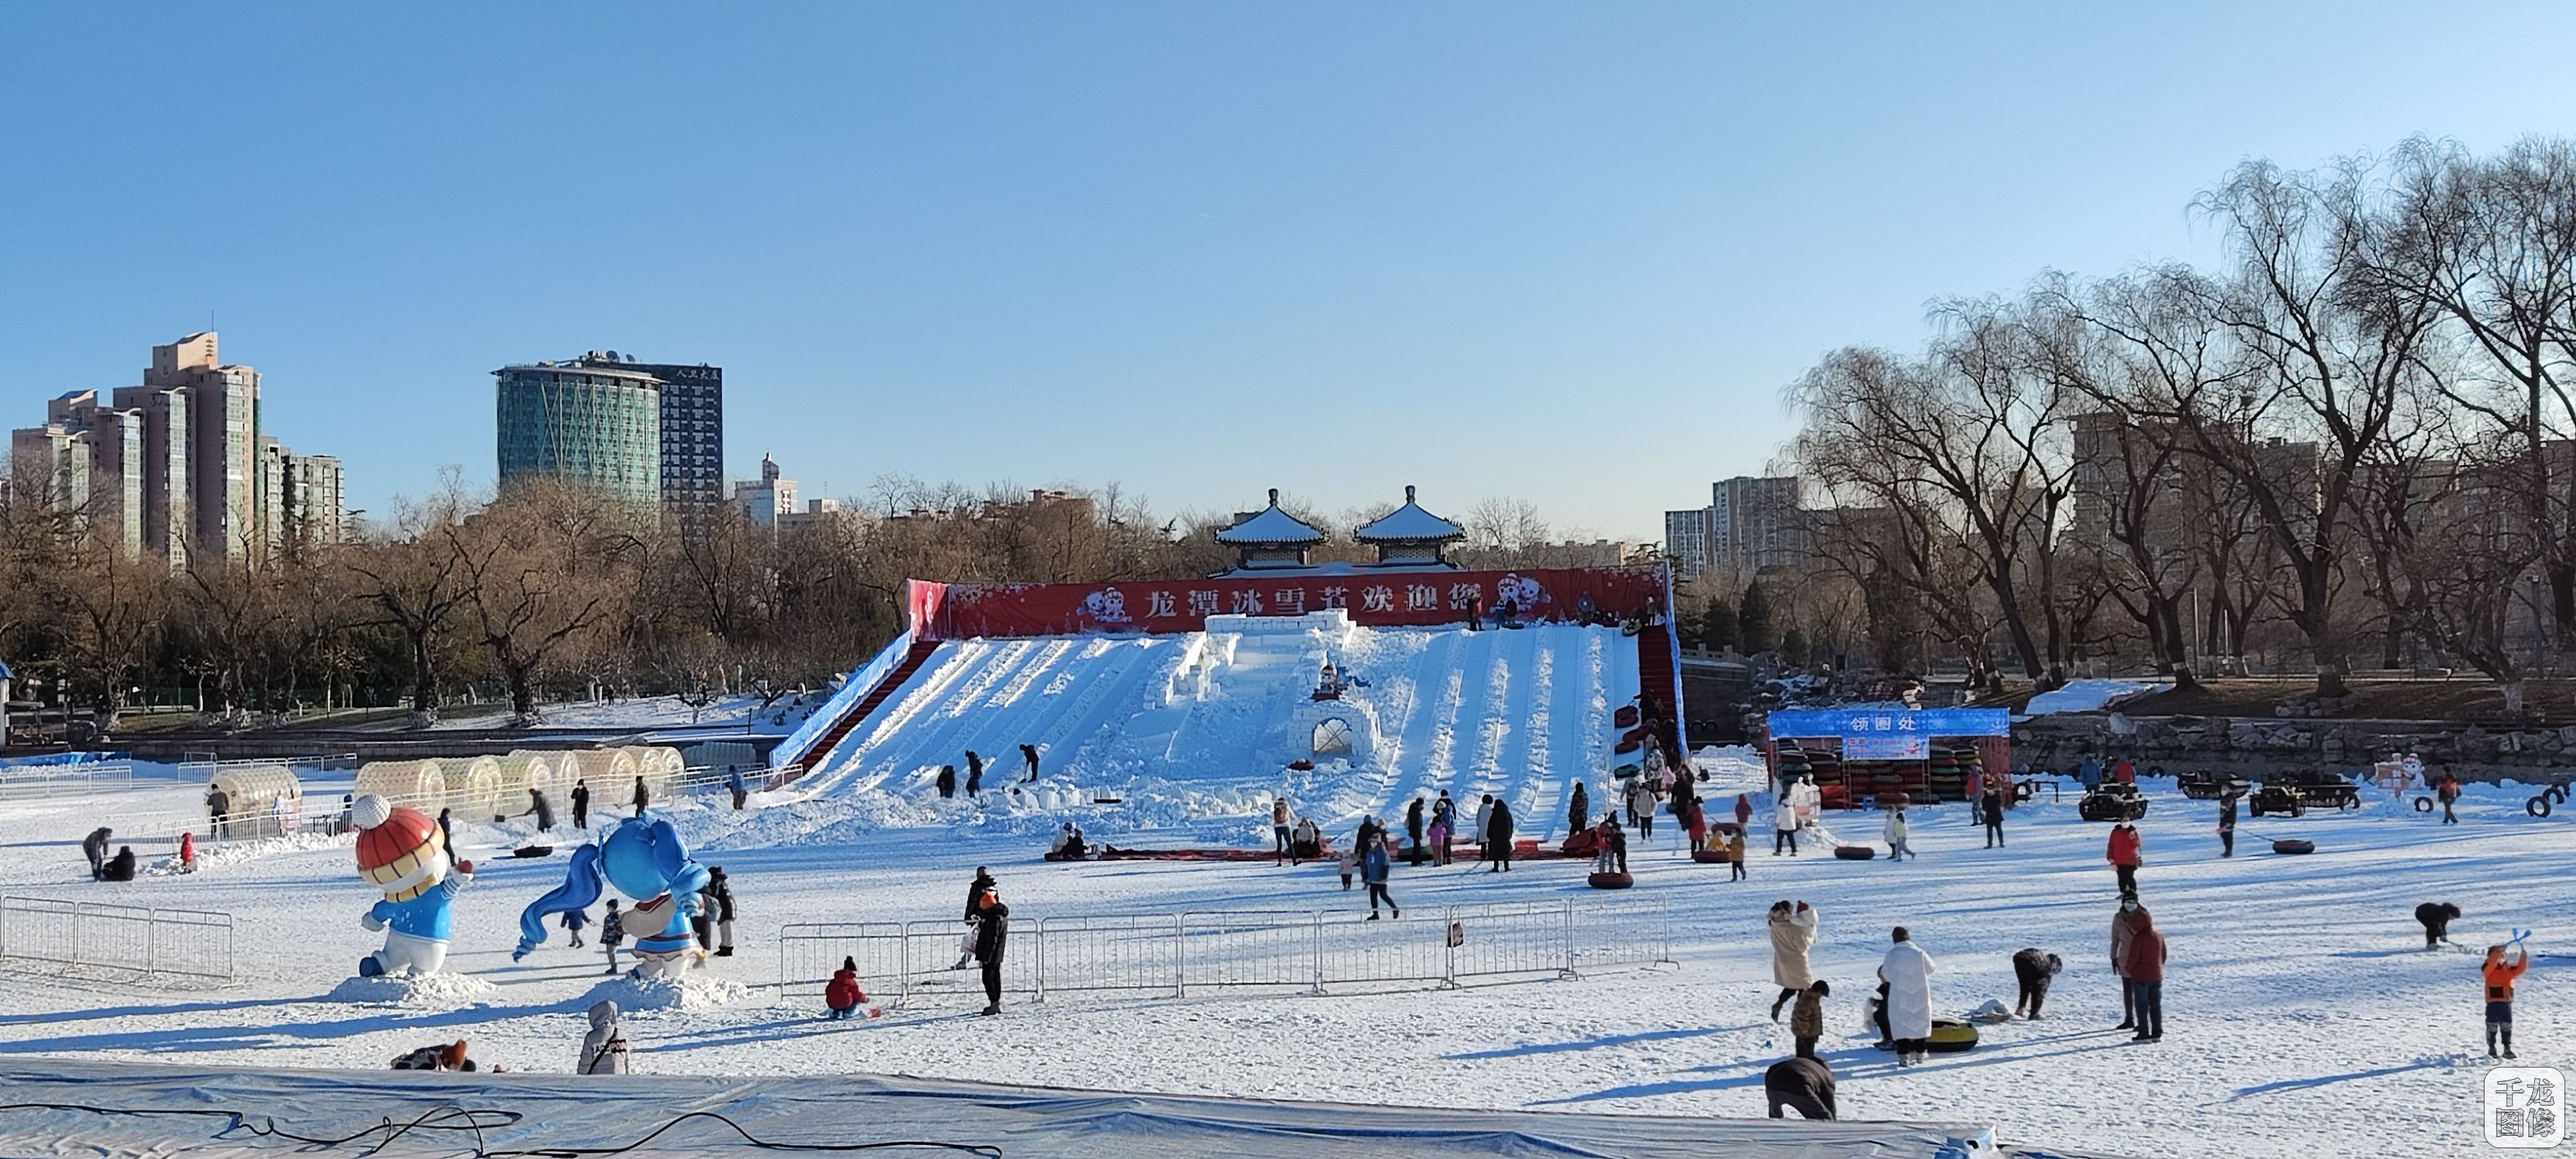 “上冰上雪”再添好去处 北京龙潭冰雪节全新亮相受拥趸